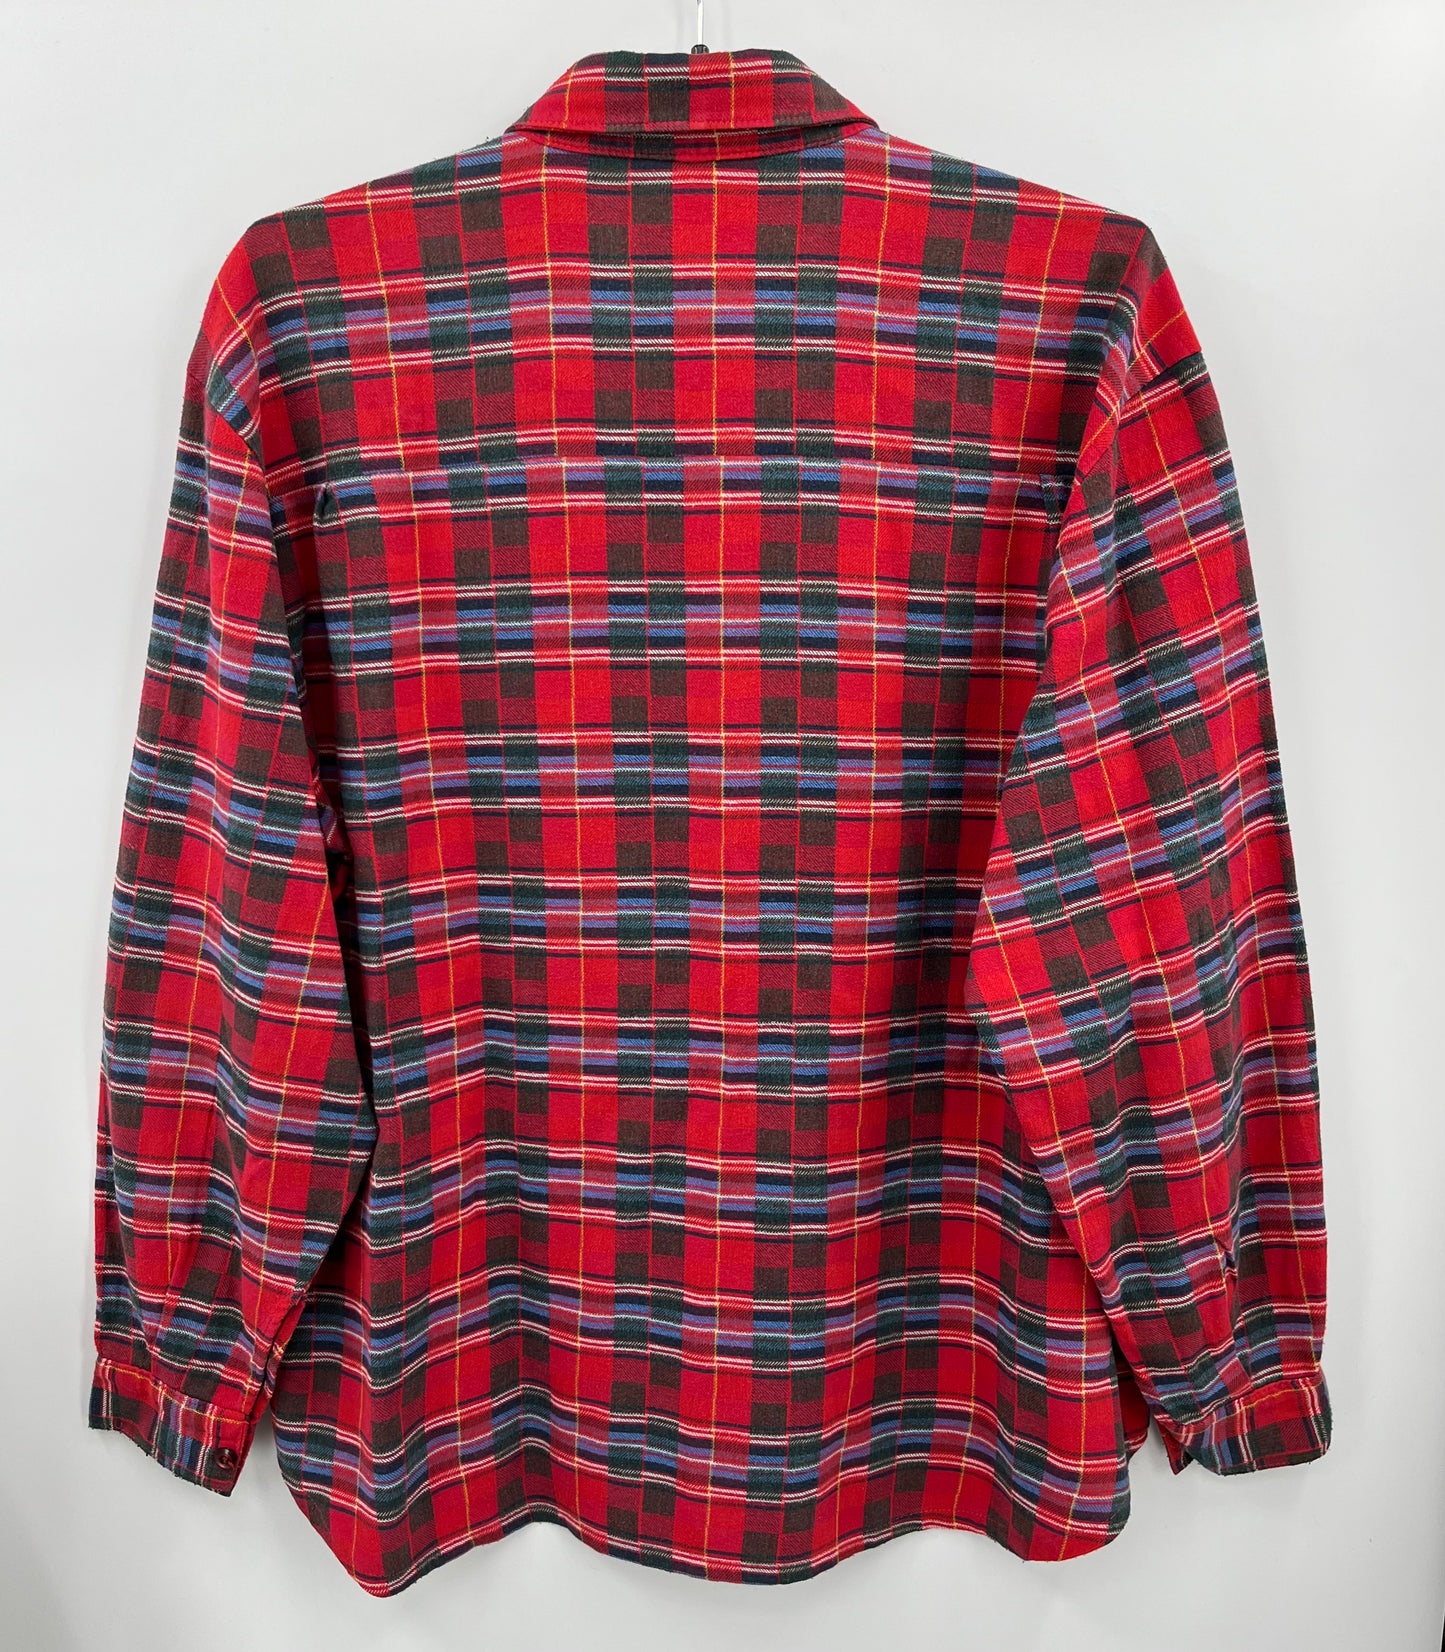 Ruutukuvioinen puna-vihreä paitapusero, 80-luku, koko 40-42